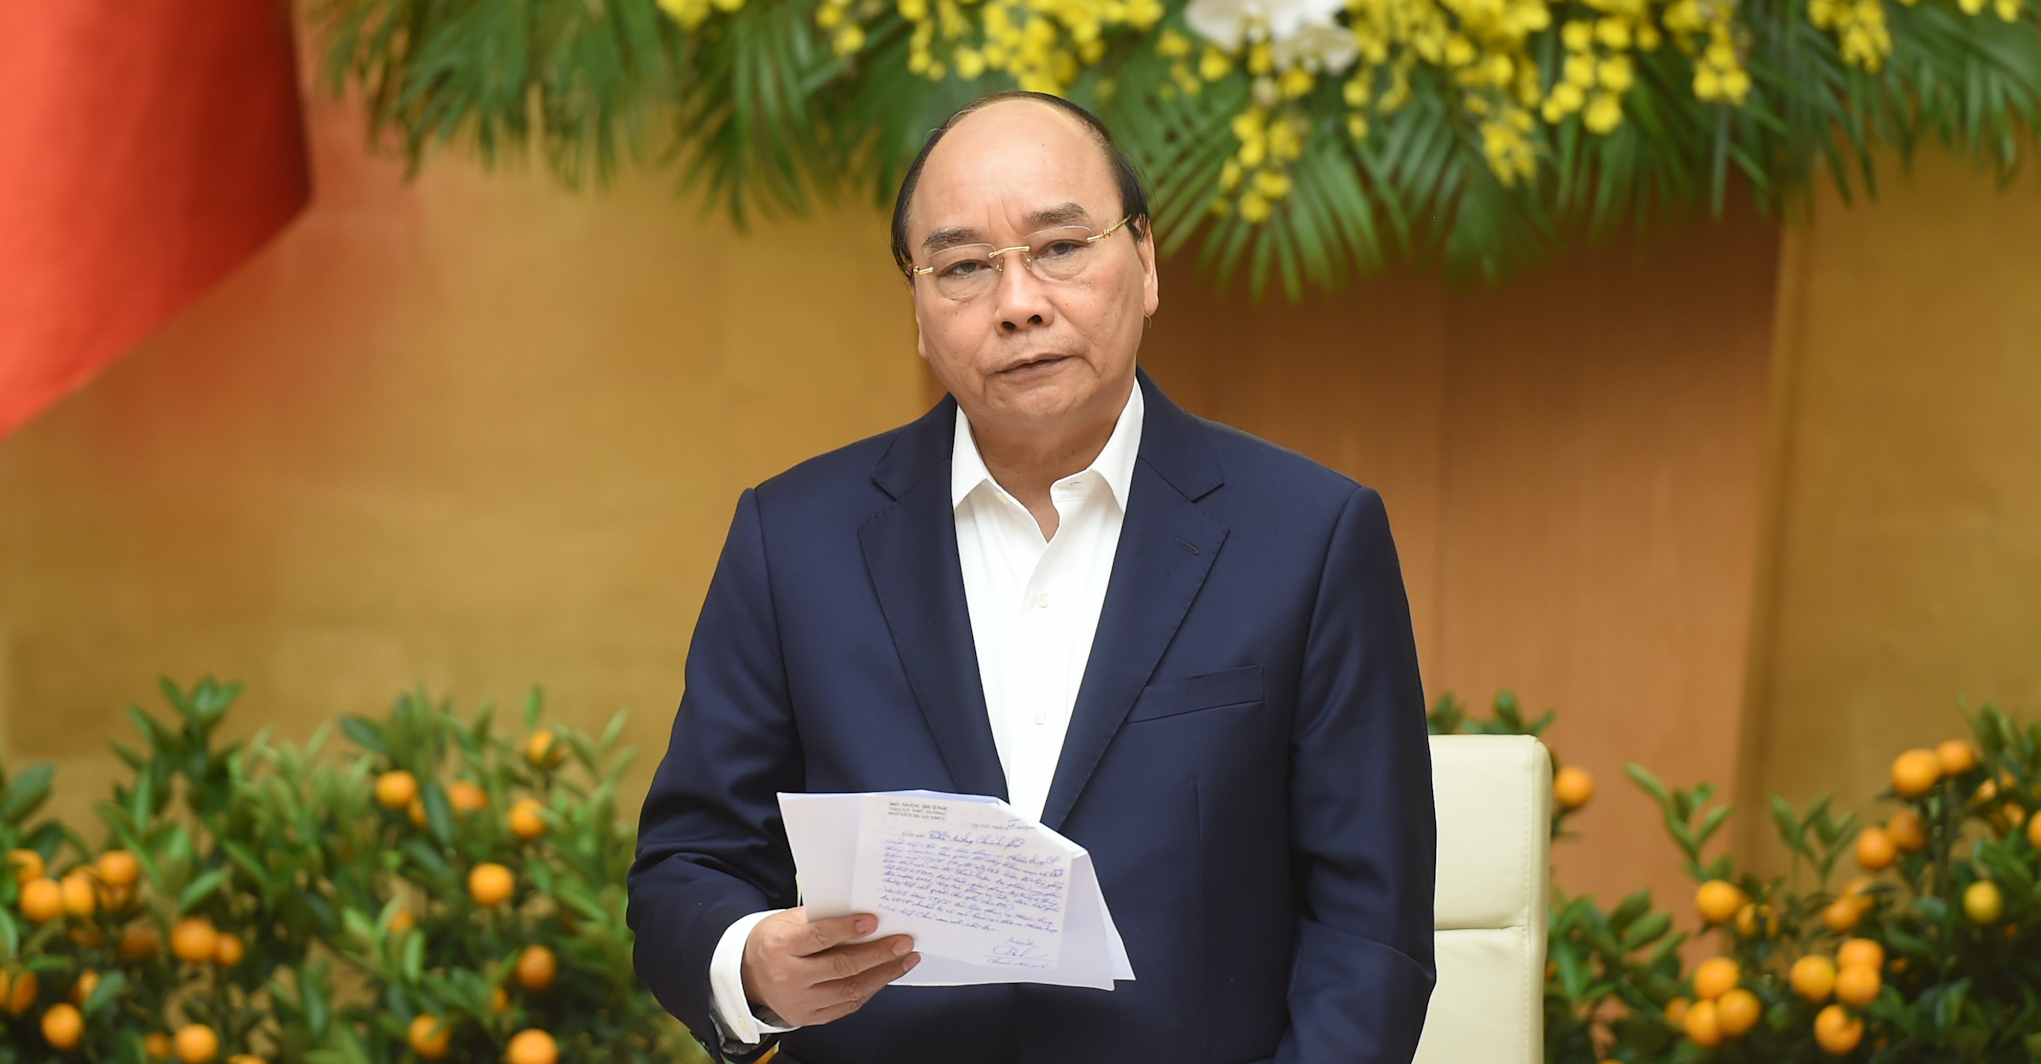 Thủ tướng Nguyễn Xuân Phúc phát biểu tại cuộc họp. Ảnh VGP